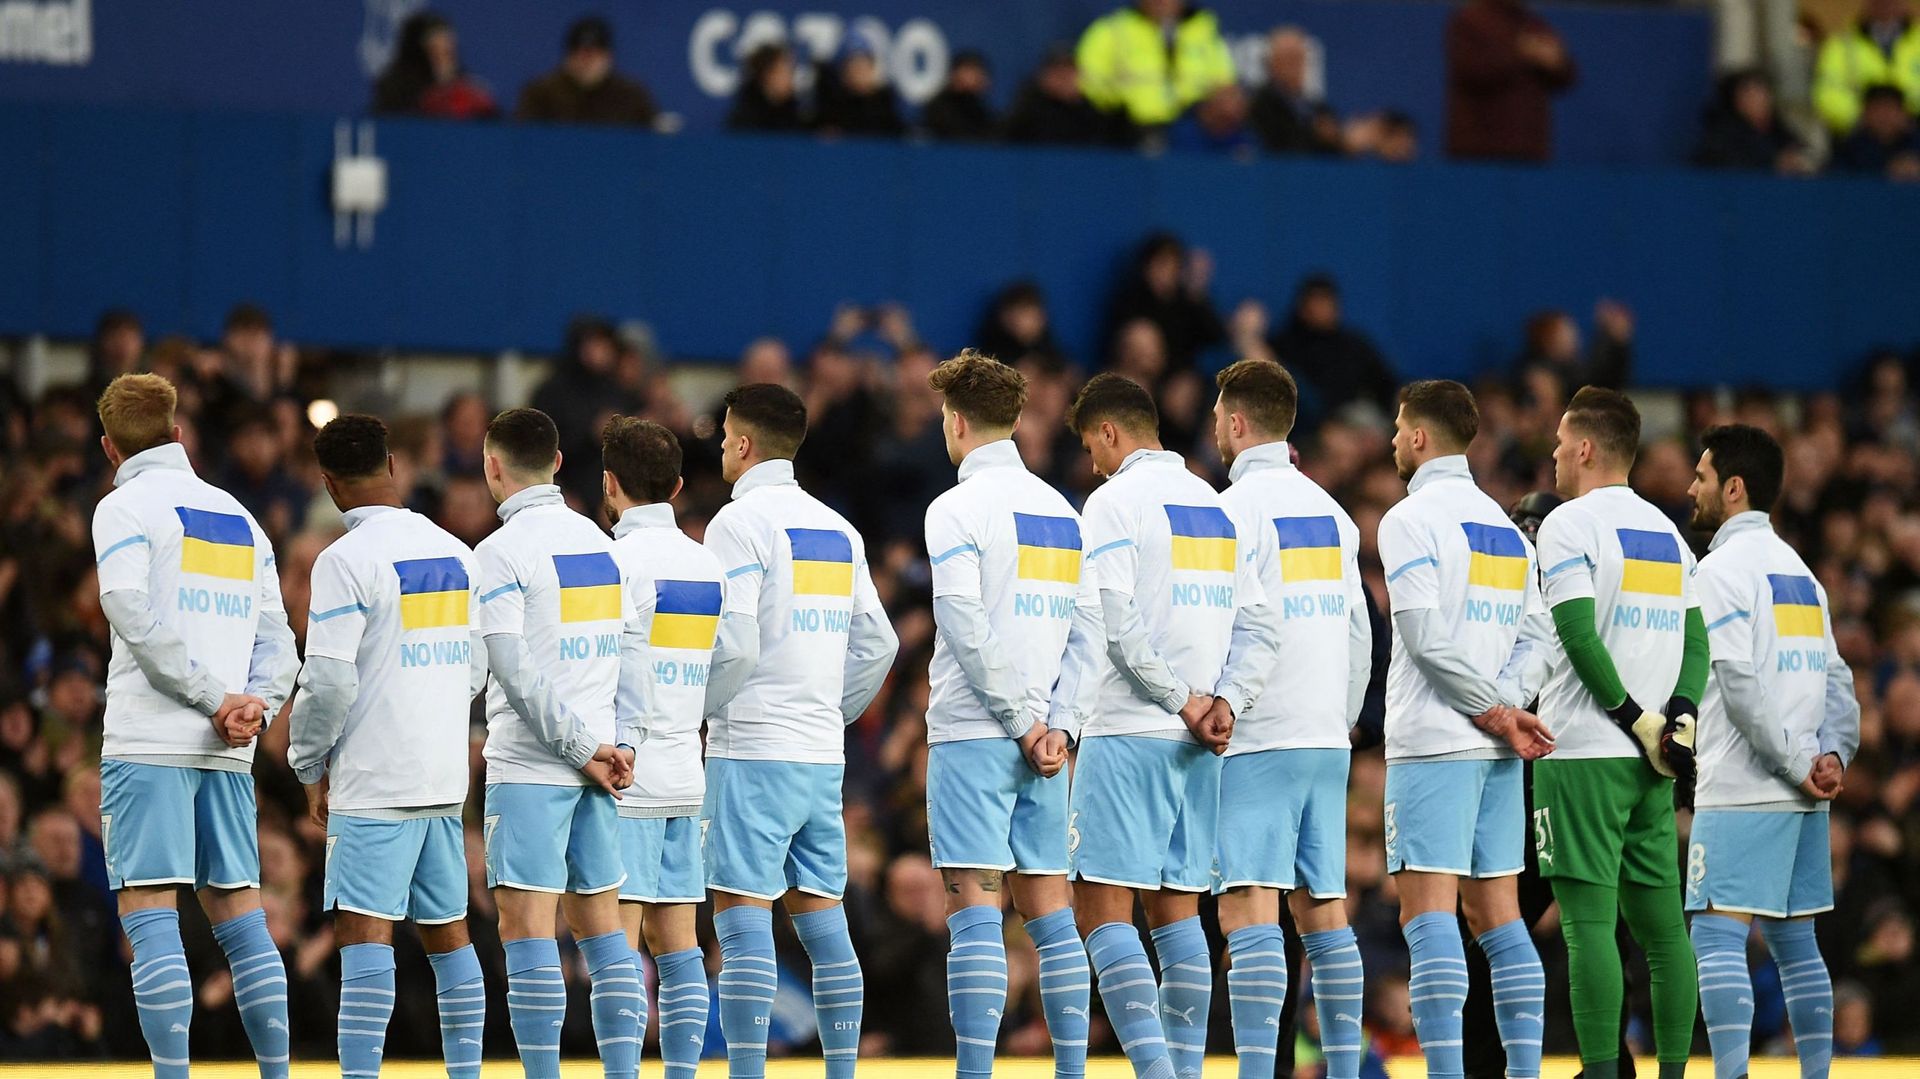 Lors du match entre Everton et Manchester City, tout le stade a apporté son soutien via des applaudissements et drapeaux Ukrainiens ainsi que des messages dénonçant la guerre sur les vestes des joueurs.